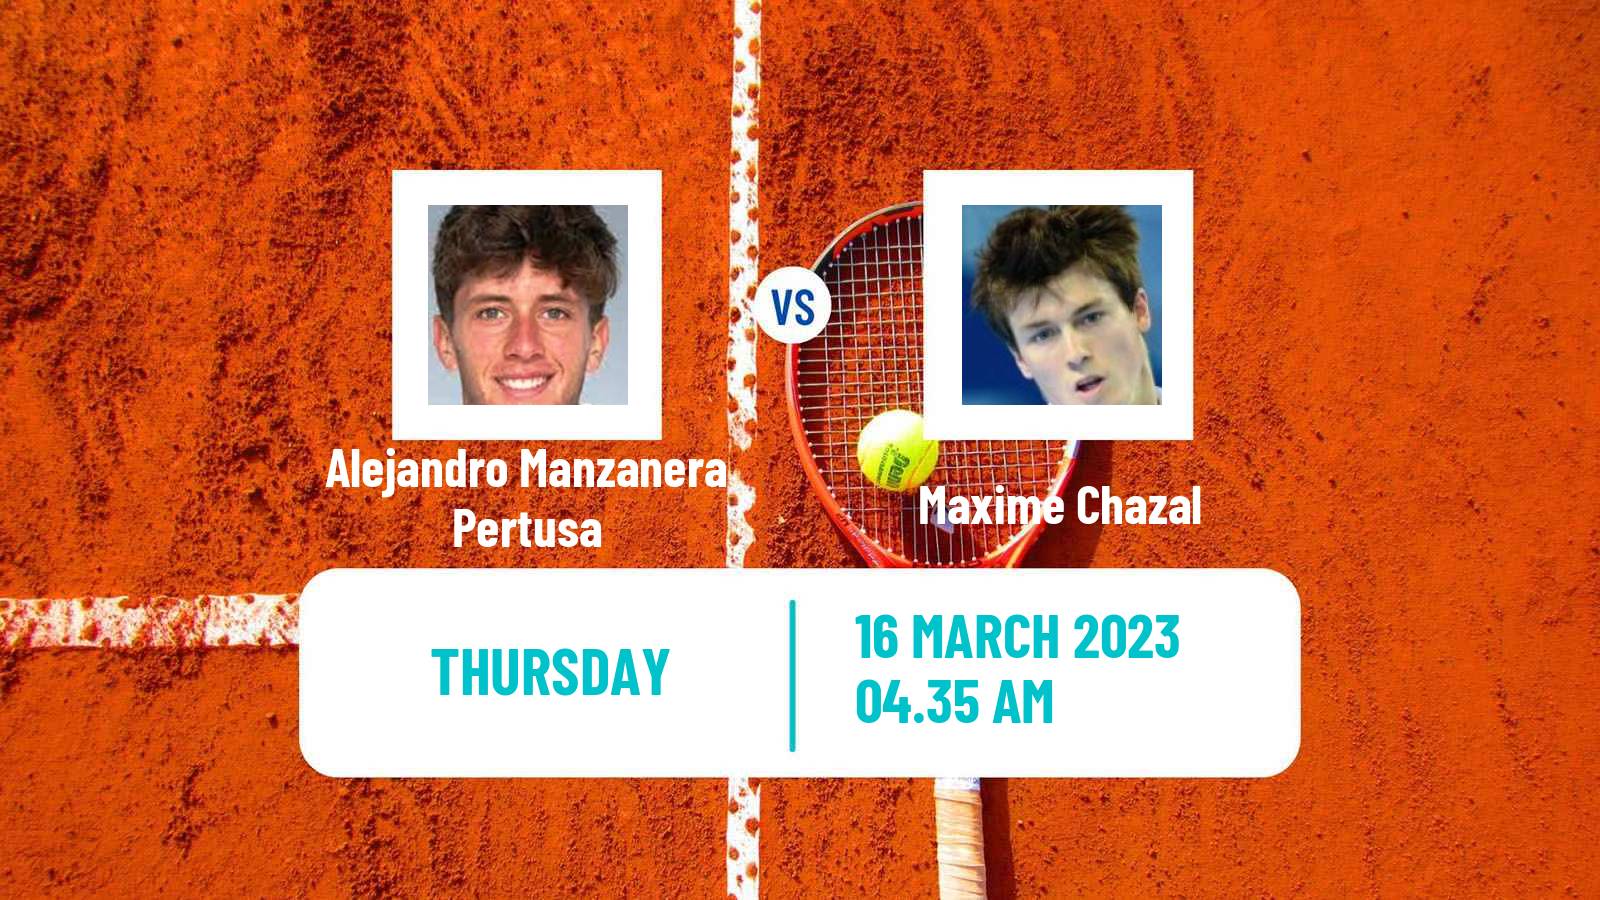 Tennis ITF Tournaments Alejandro Manzanera Pertusa - Maxime Chazal